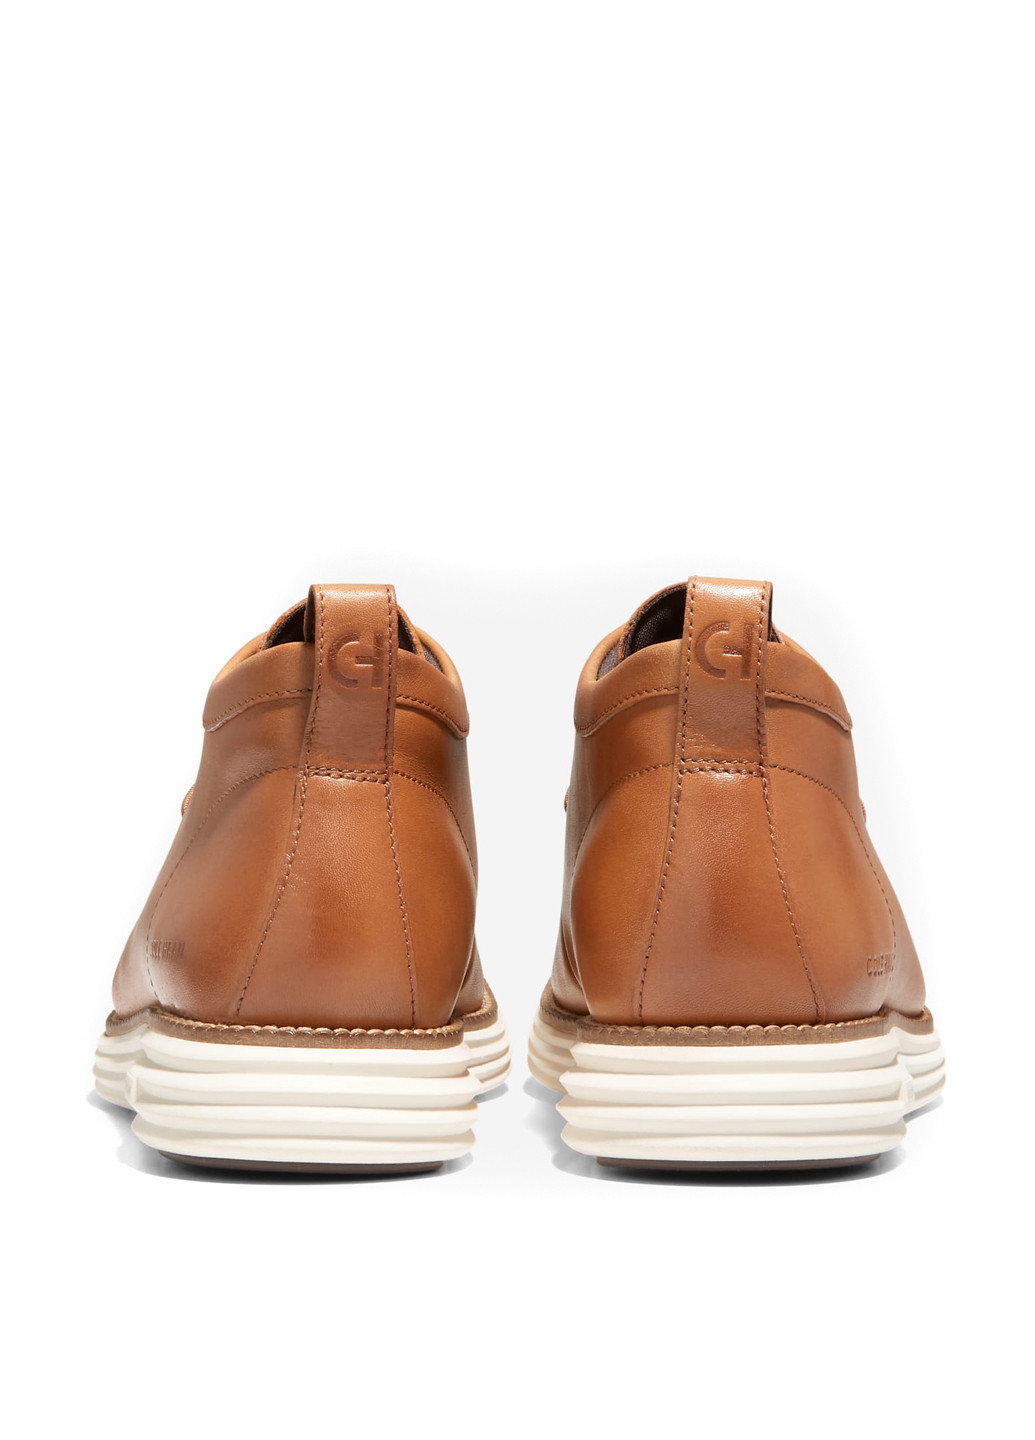 Светло-коричневые осенние ботинки Cole Haan